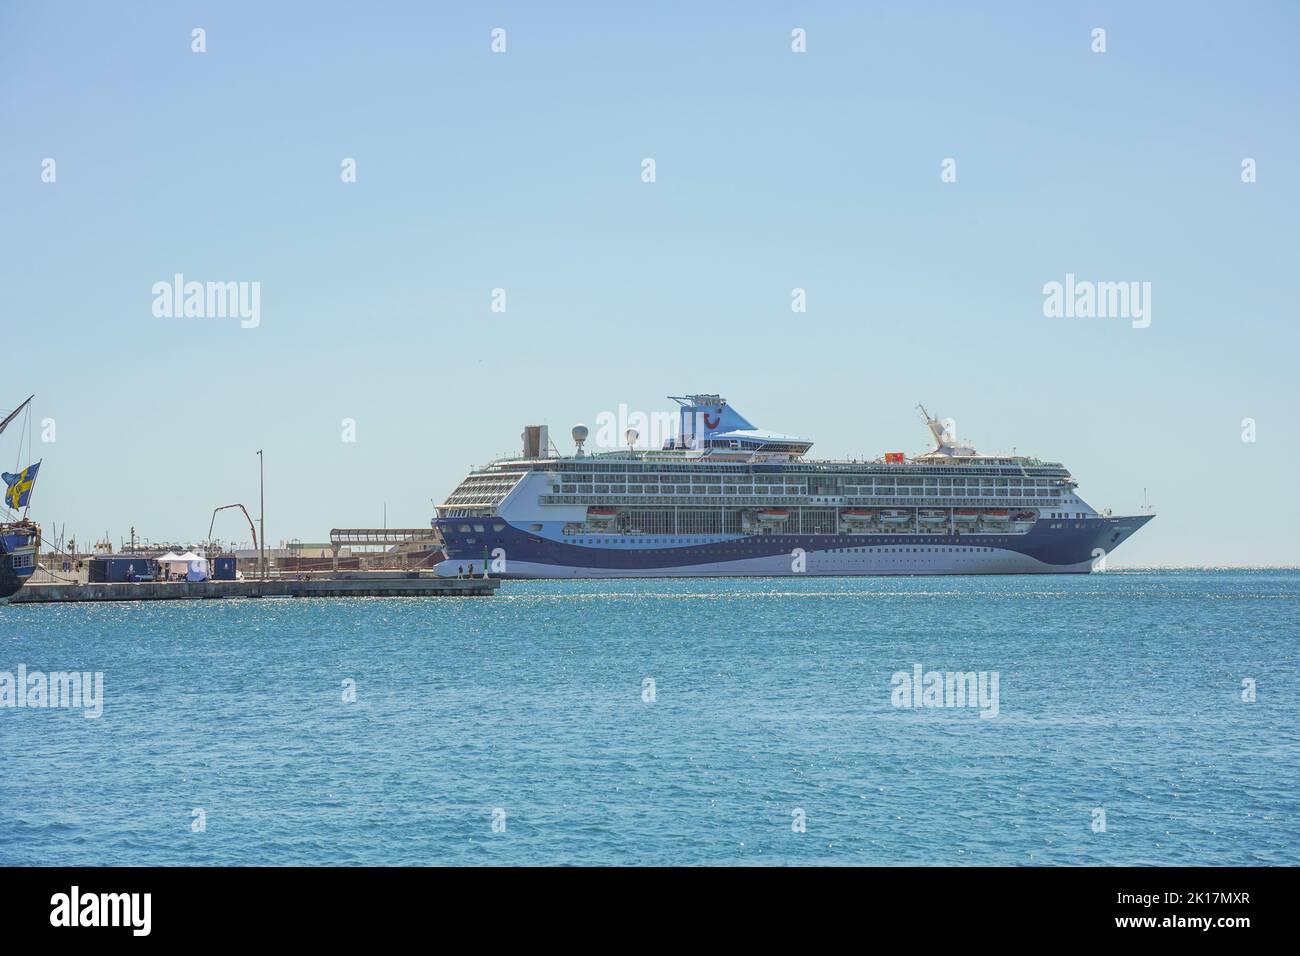 Modern cruise line, Cruise ship, TUI Marella Discovery 2 in in the port of Malaga, Costa del Sol, Spain. Stock Photo